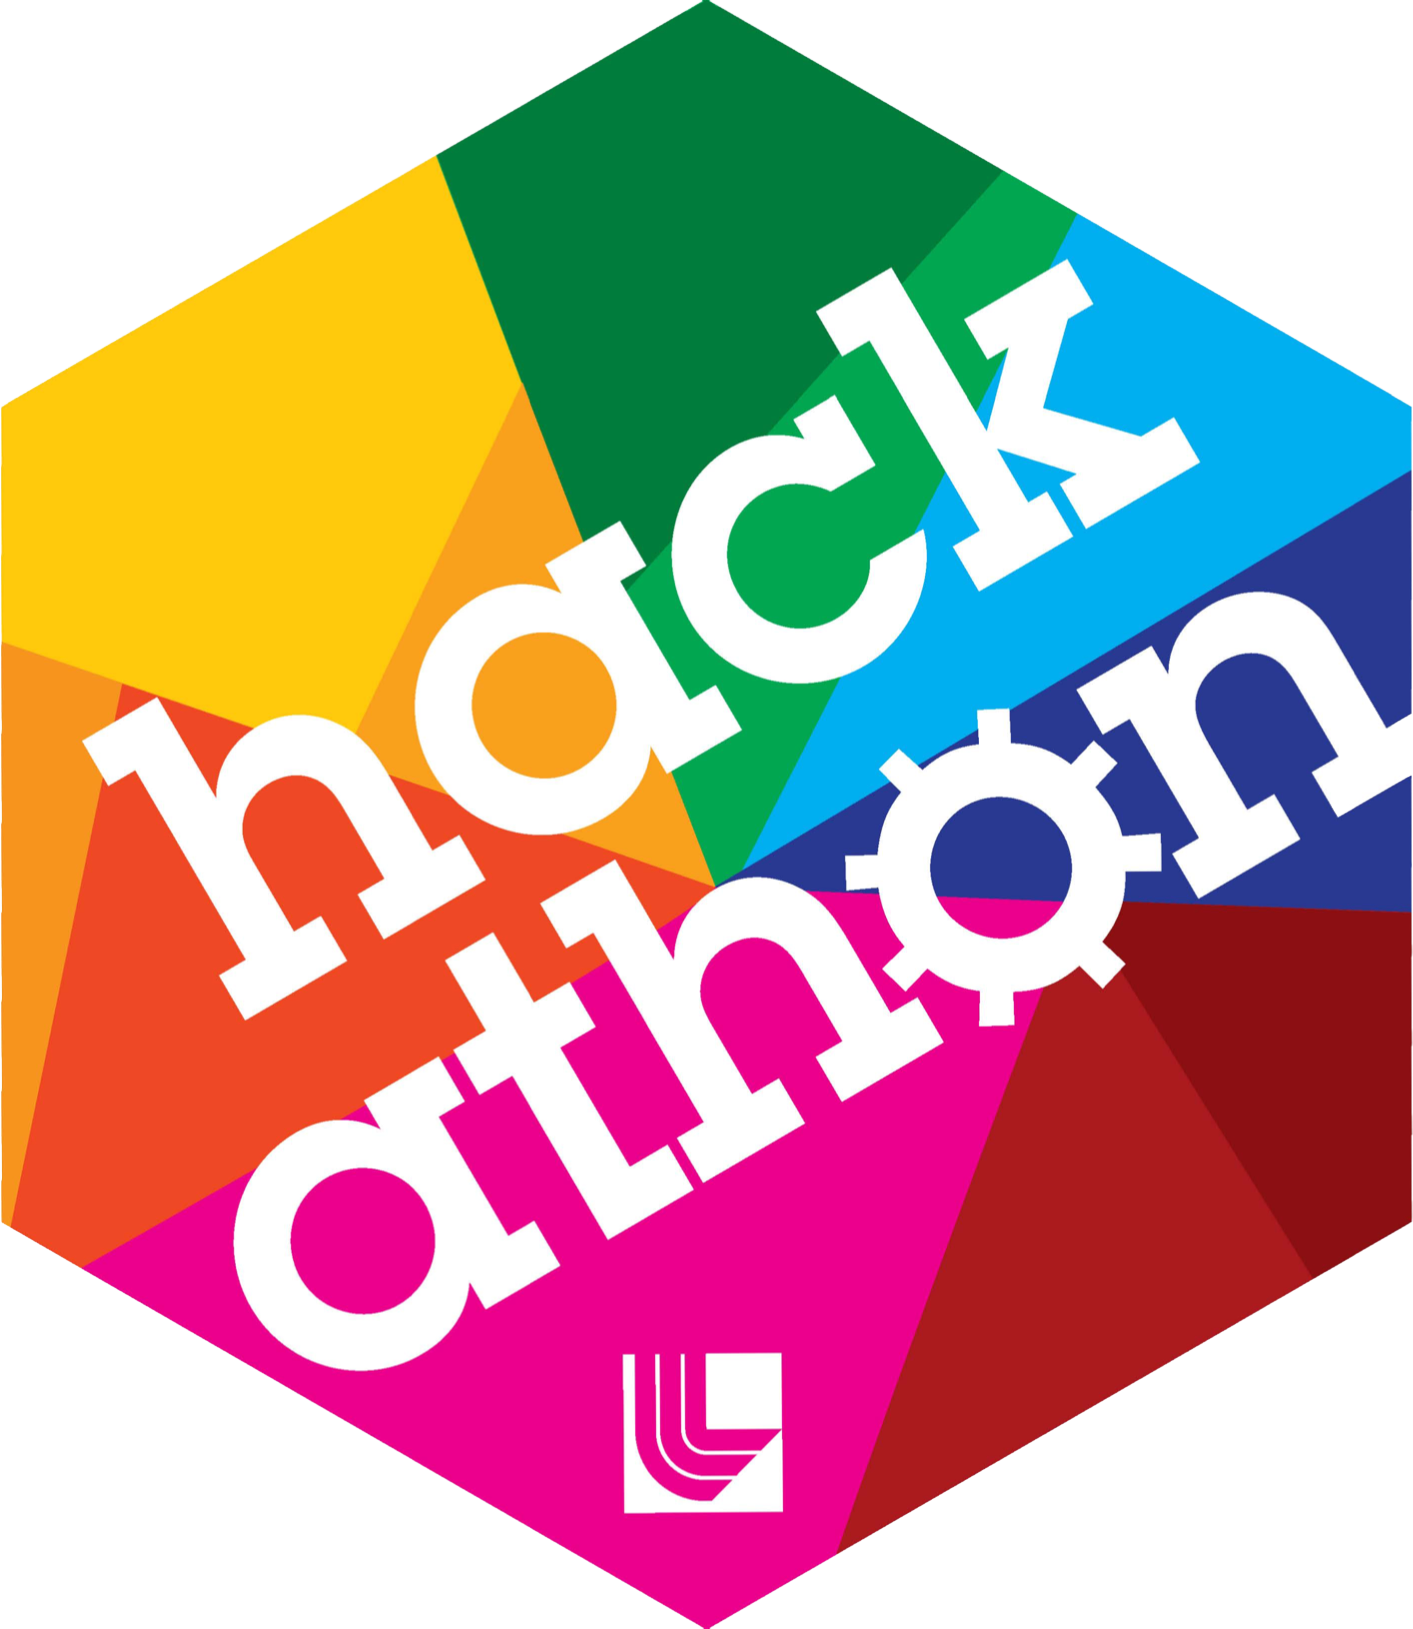 Hackathon Part Two - Using Hackathons for Recruitment